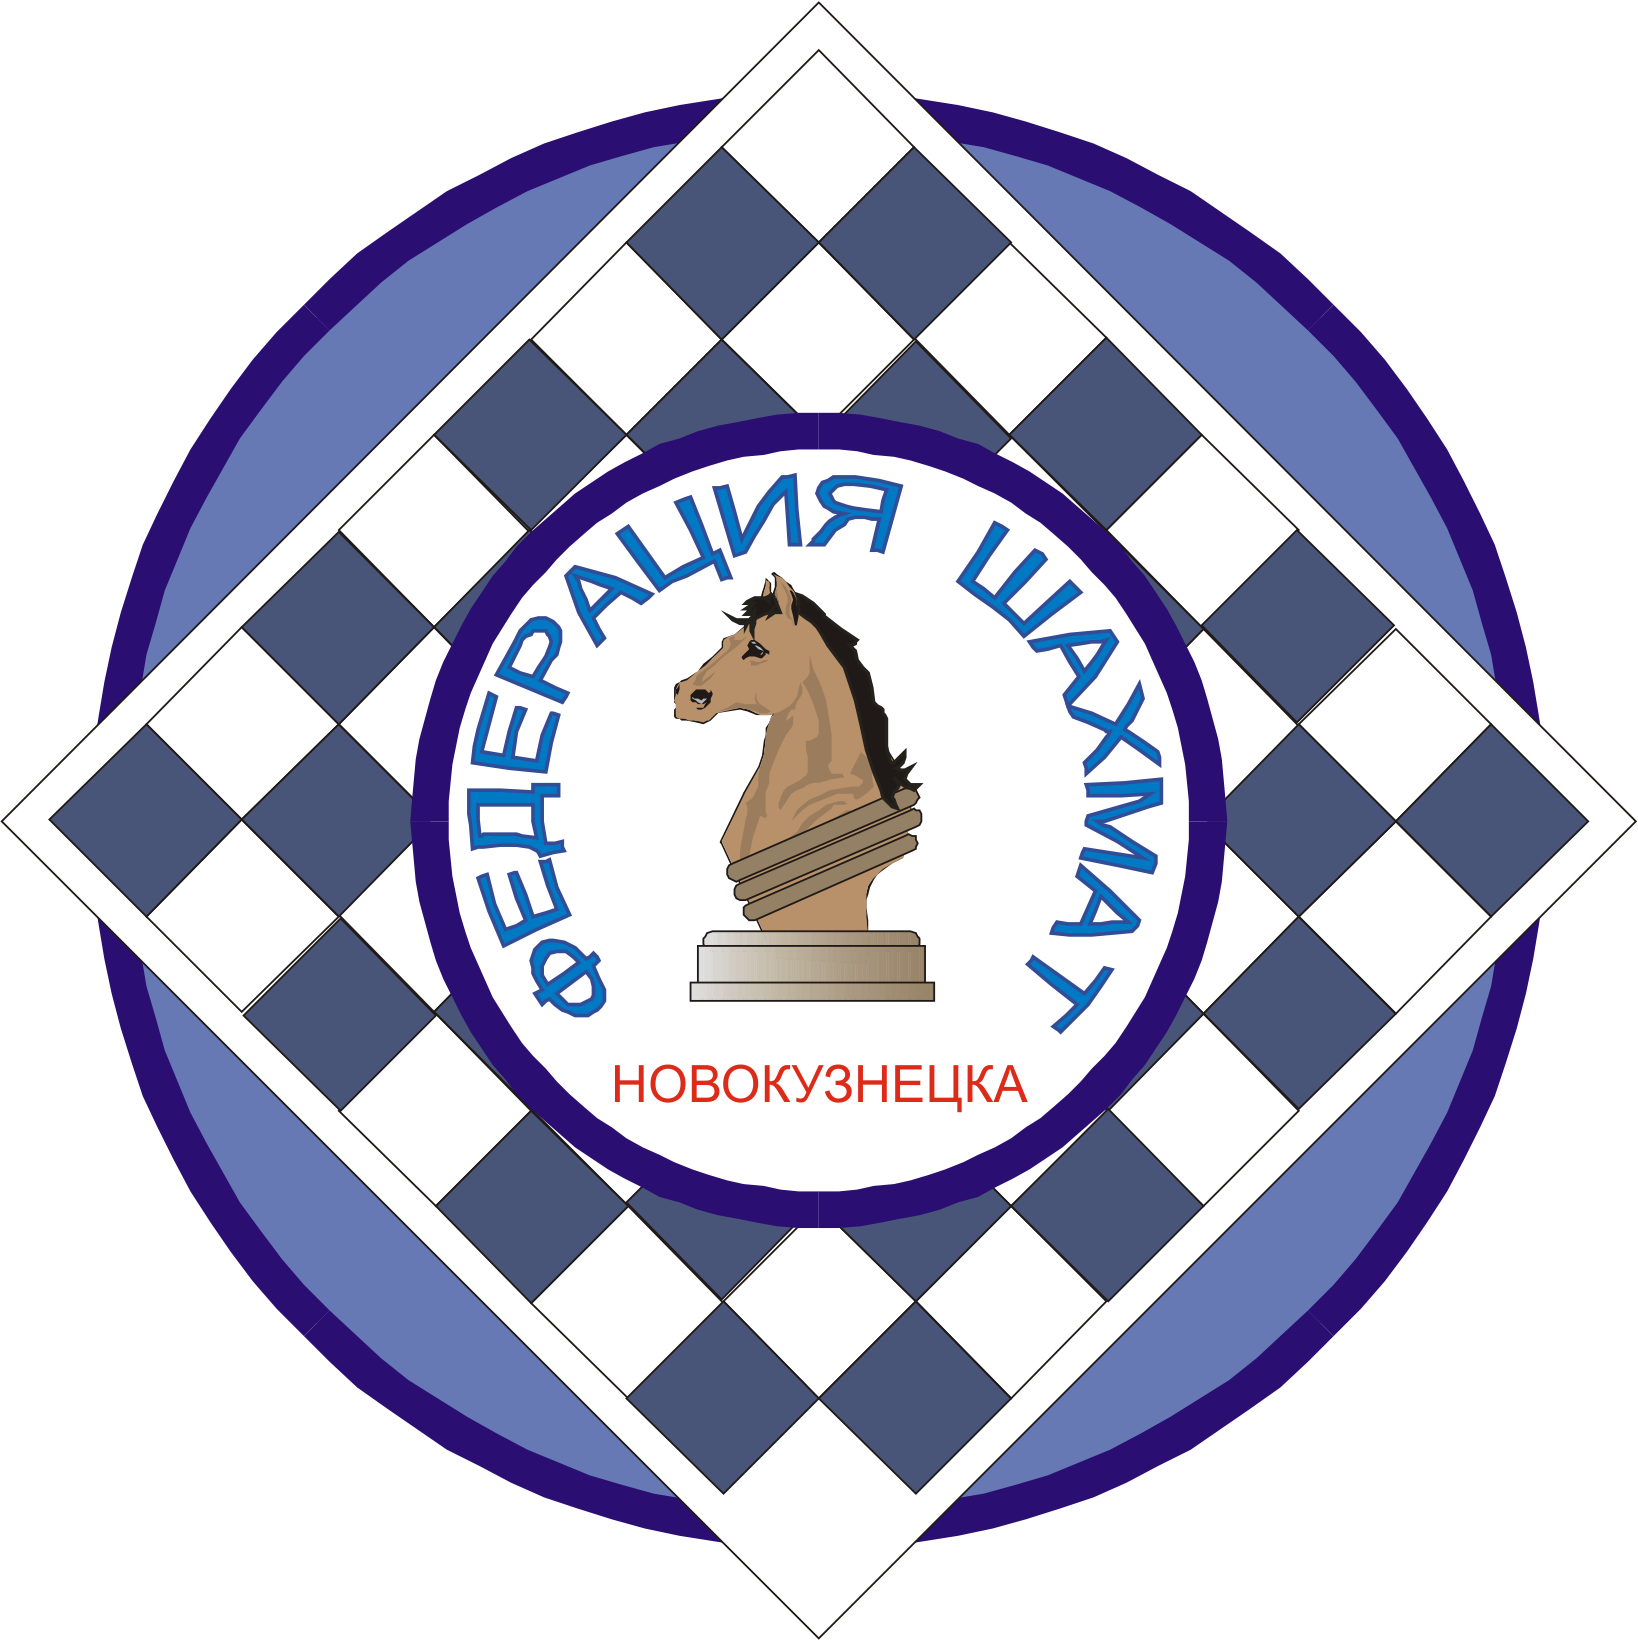 Шахматная Академия Новокузнецк. Шахматная Федерация. Шахматная эмблема. Логотип шахматной Федерации.